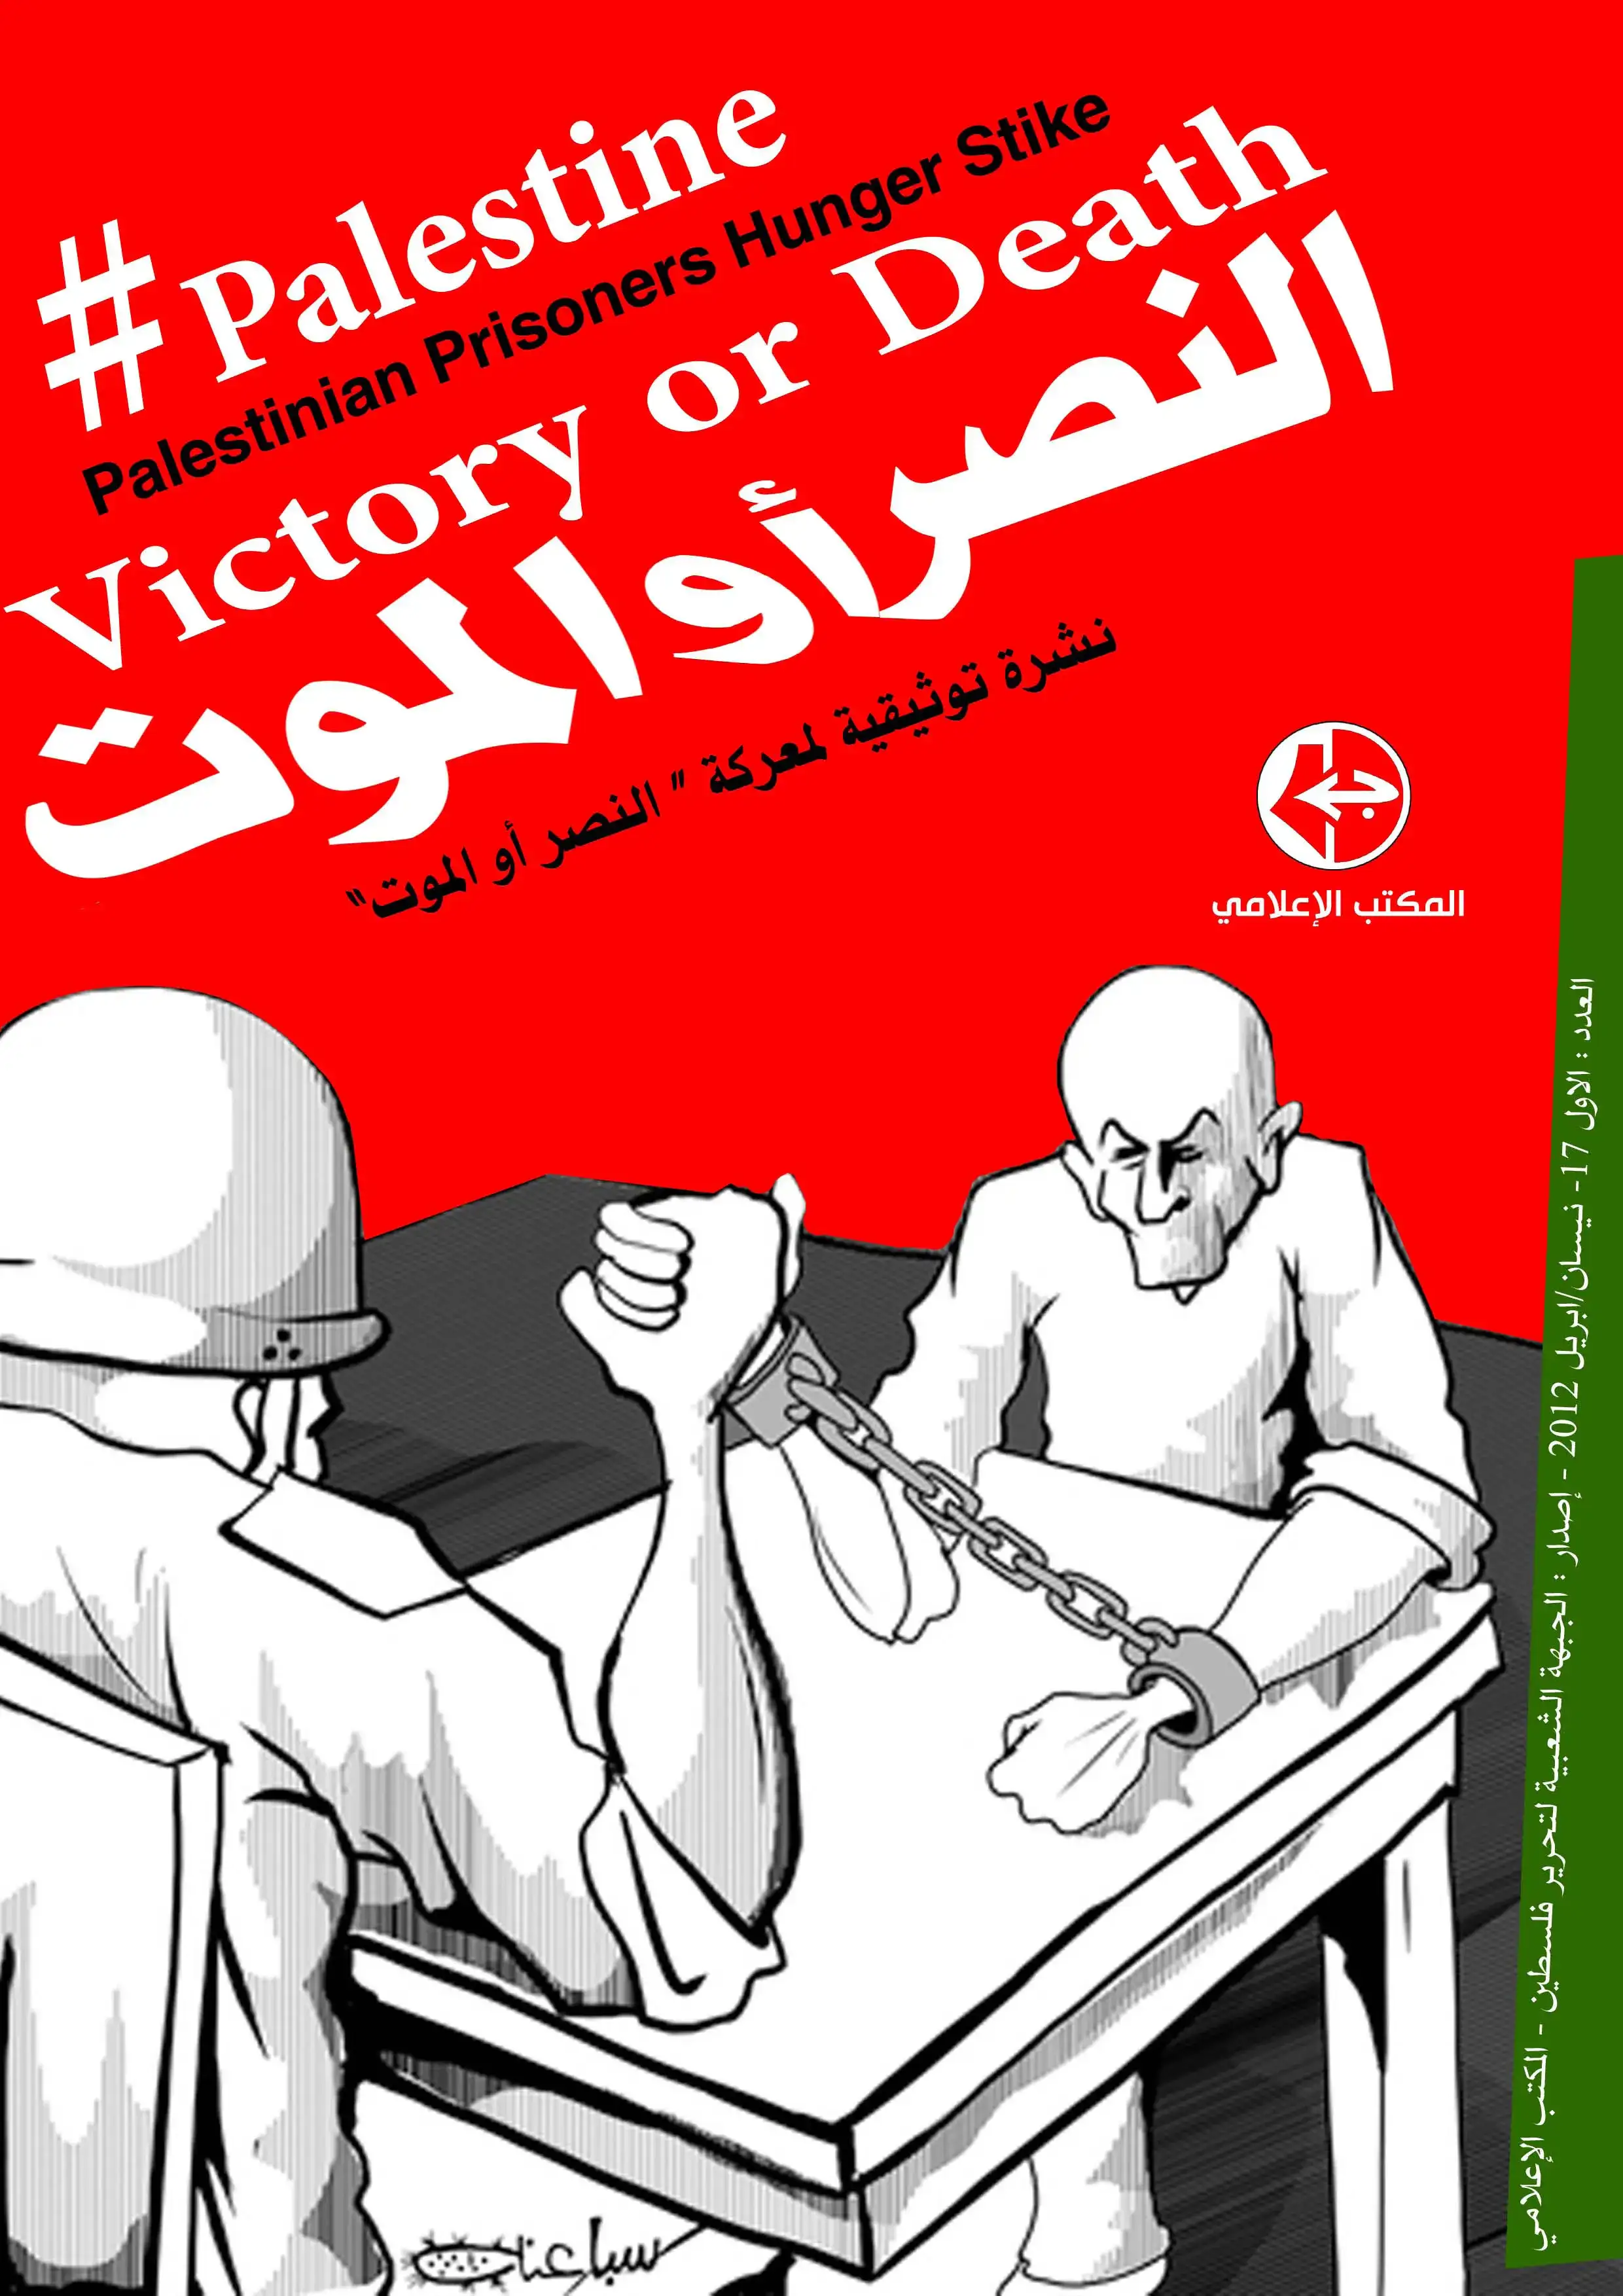 نشرة توثيقية لمعركة النصر أو الموت || المكتب الإعلامي || الجبهة الشعبية لتحرير فلسطين